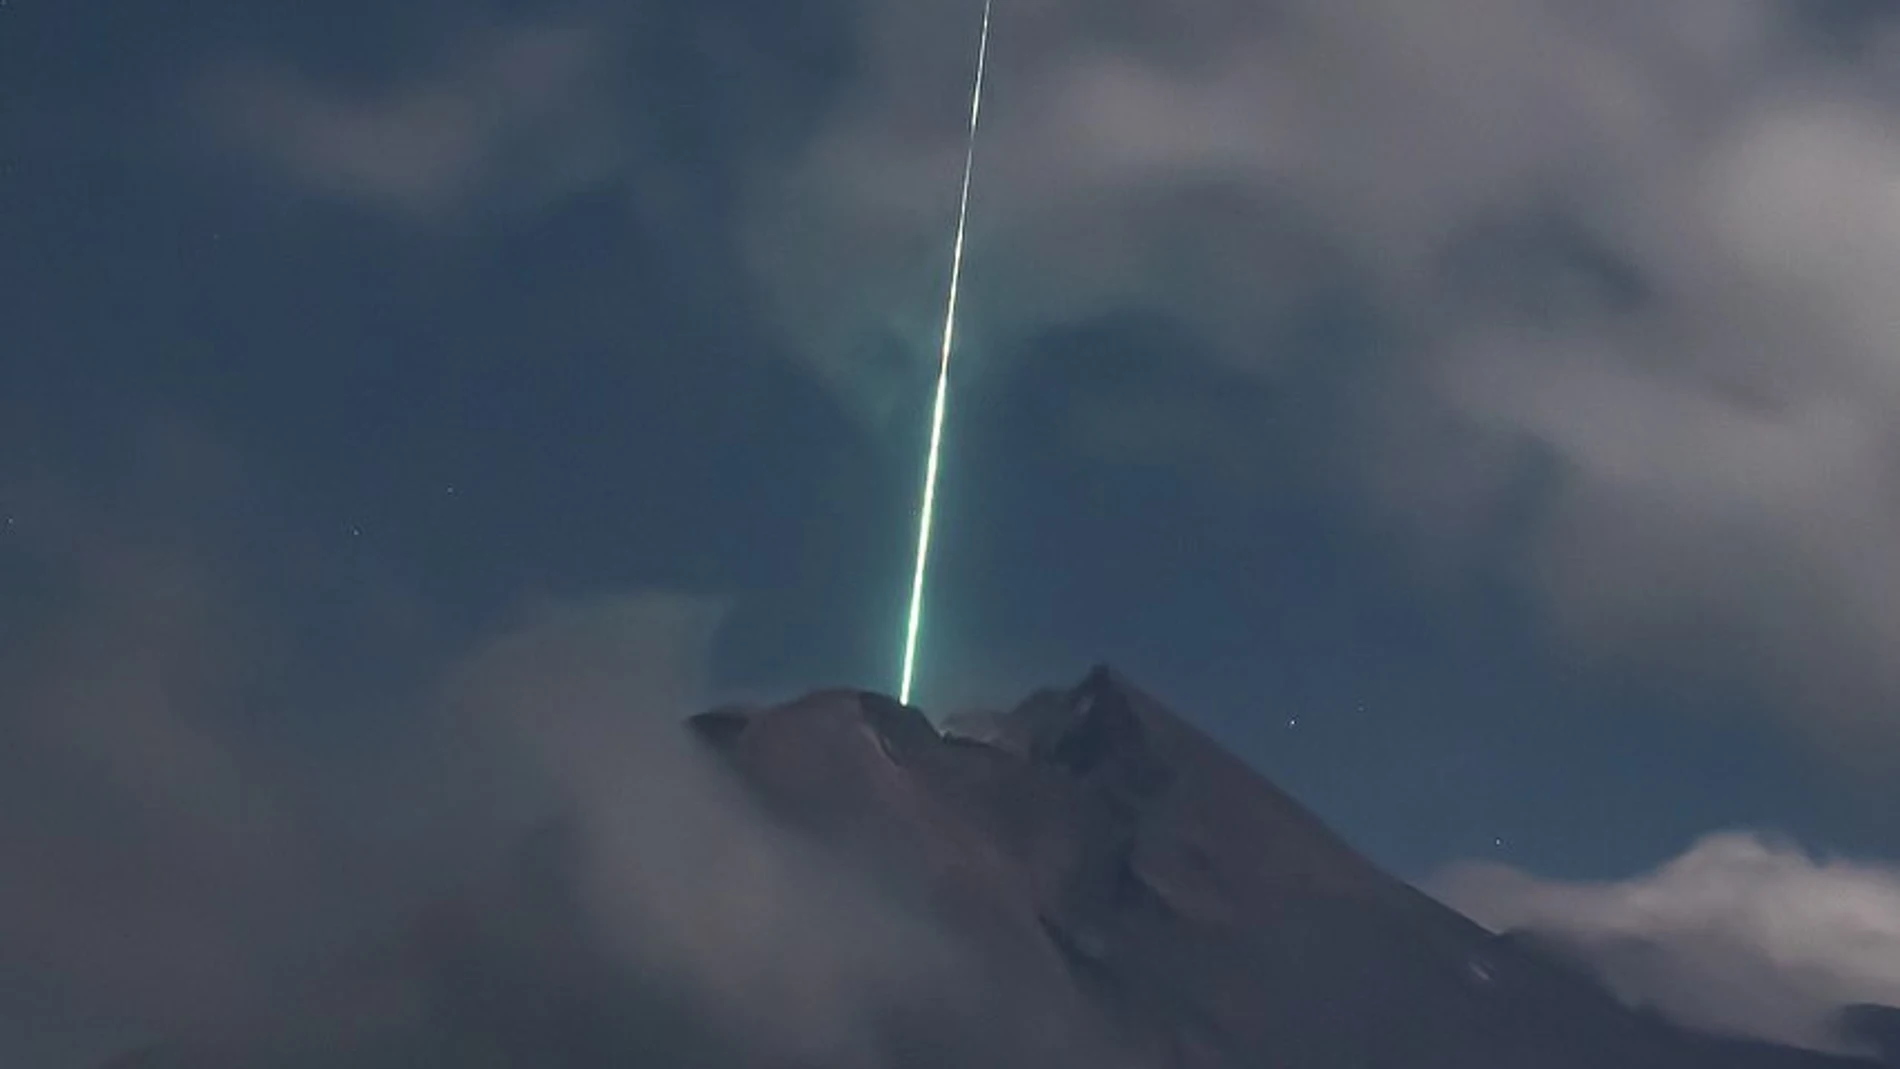 Las increíbles imágenes de un meteorito al caer sobre el volcán Merapi en Indonesia